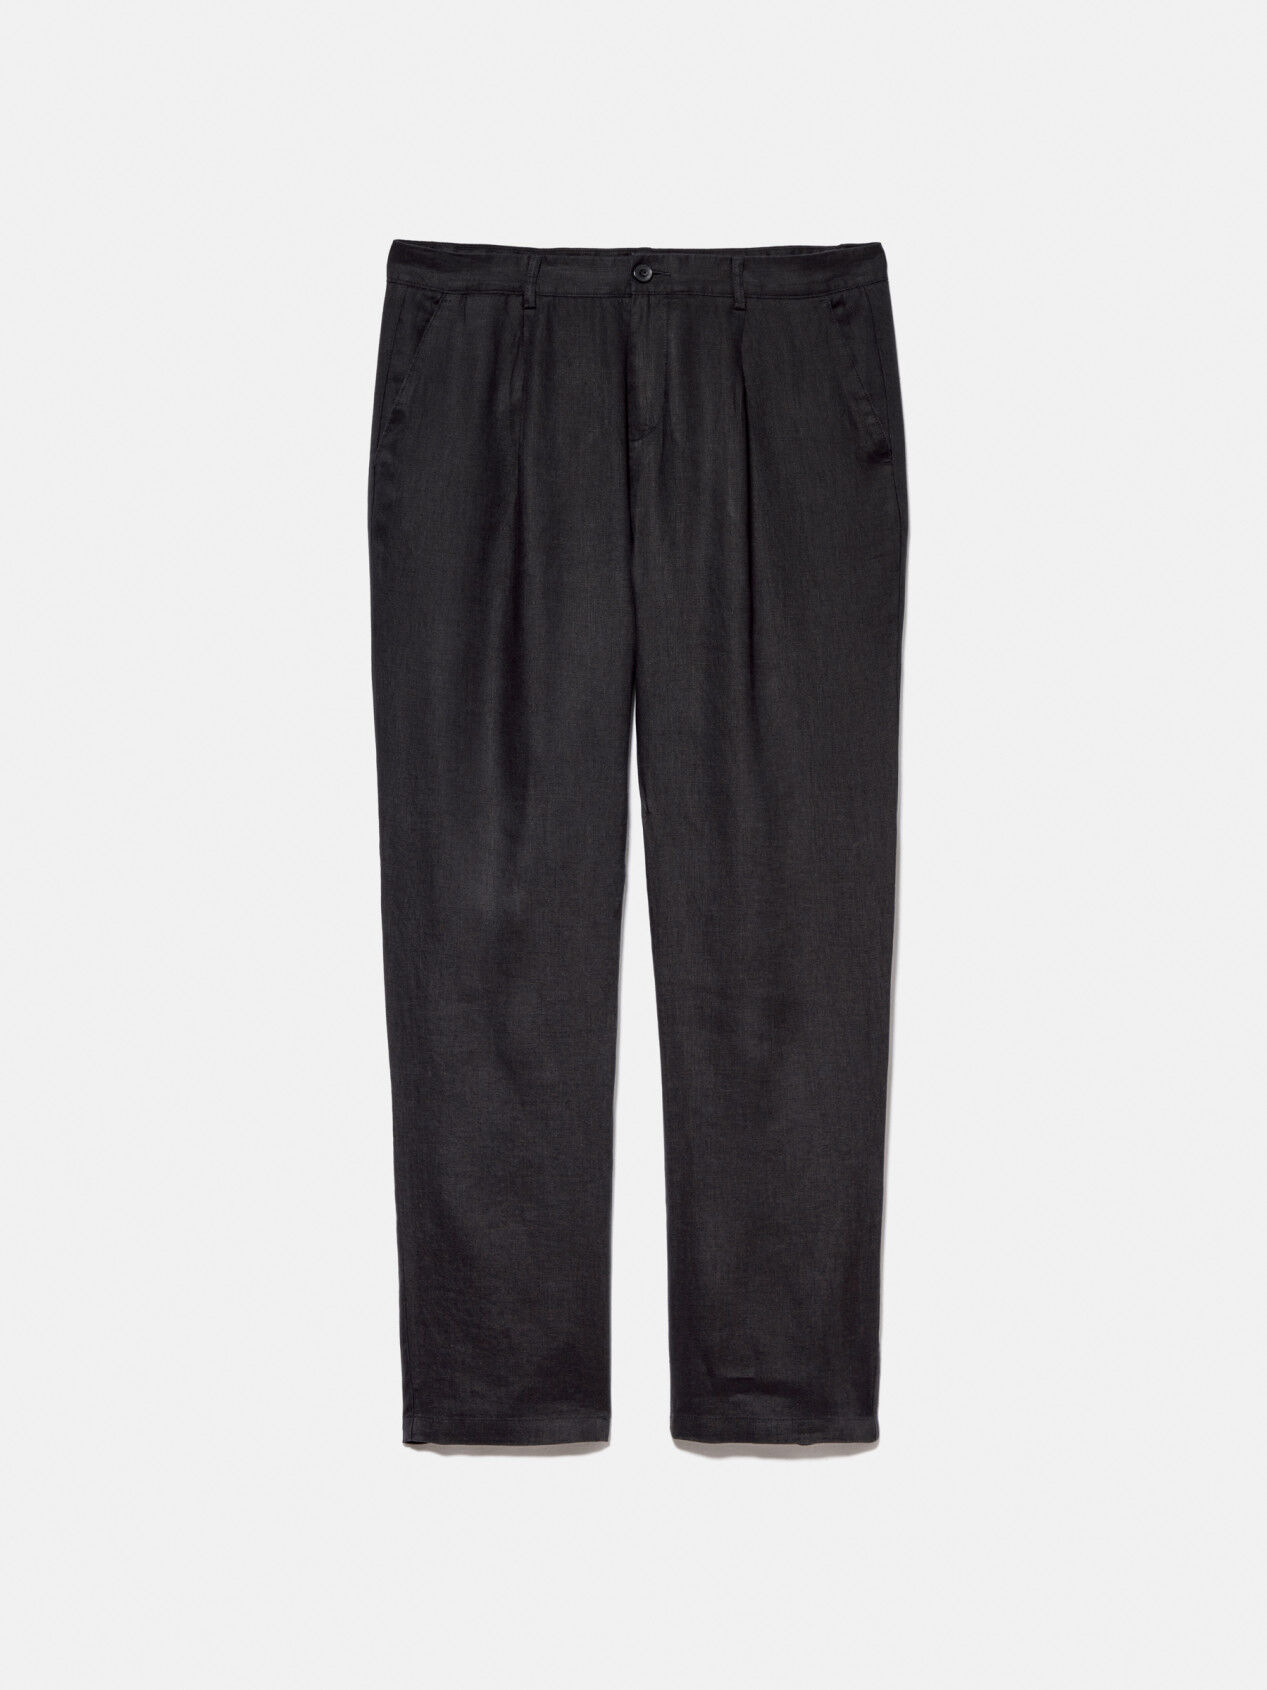 Men's black linen trousers - Regular fit - Shop Varteks d.d.